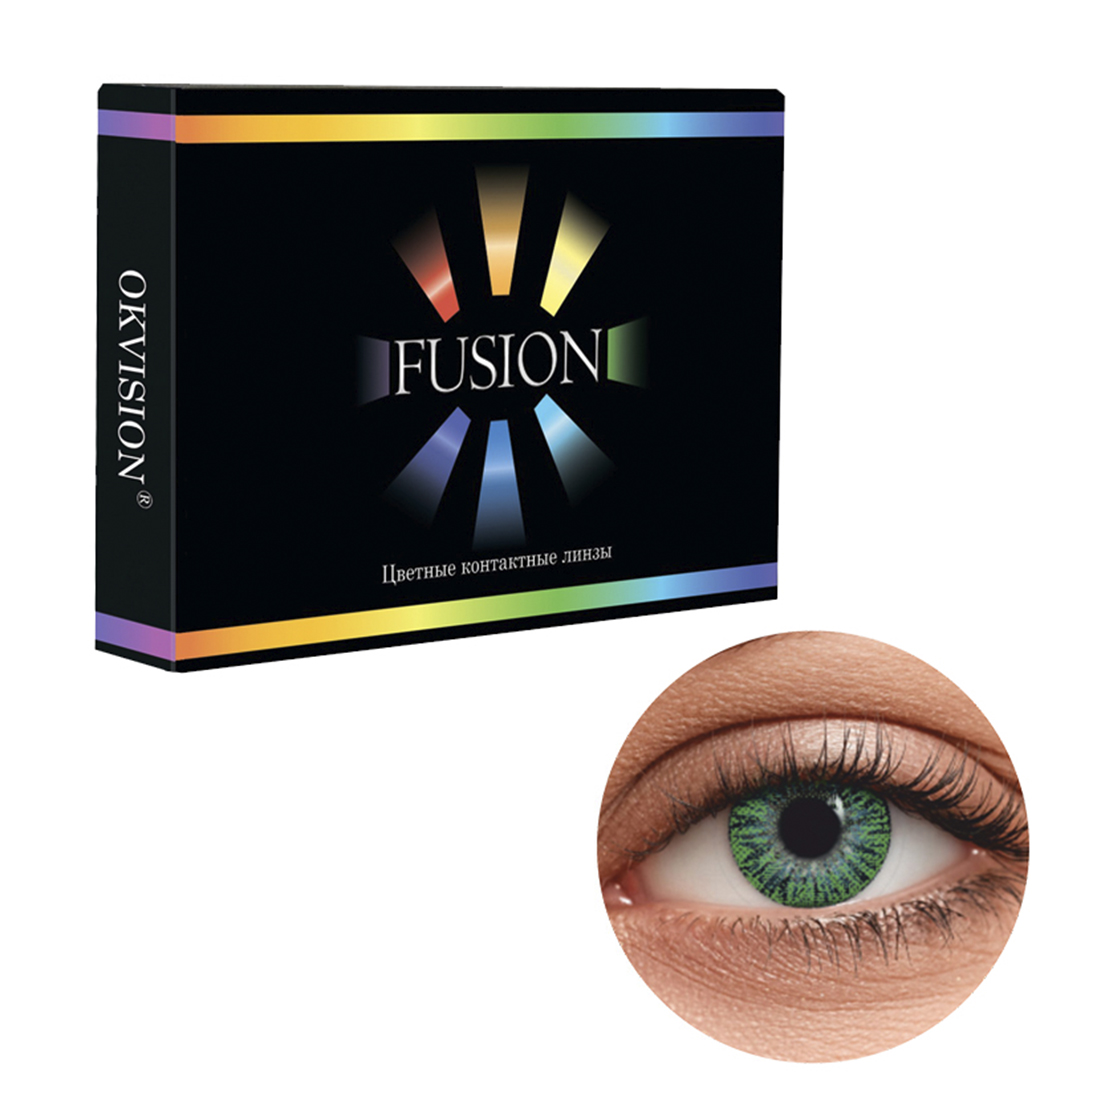 Цветные контактные линзы OKVision Fusion monthly R 8.6 -3.00 цвет Lime 2 шт 1 месяц - фото 1